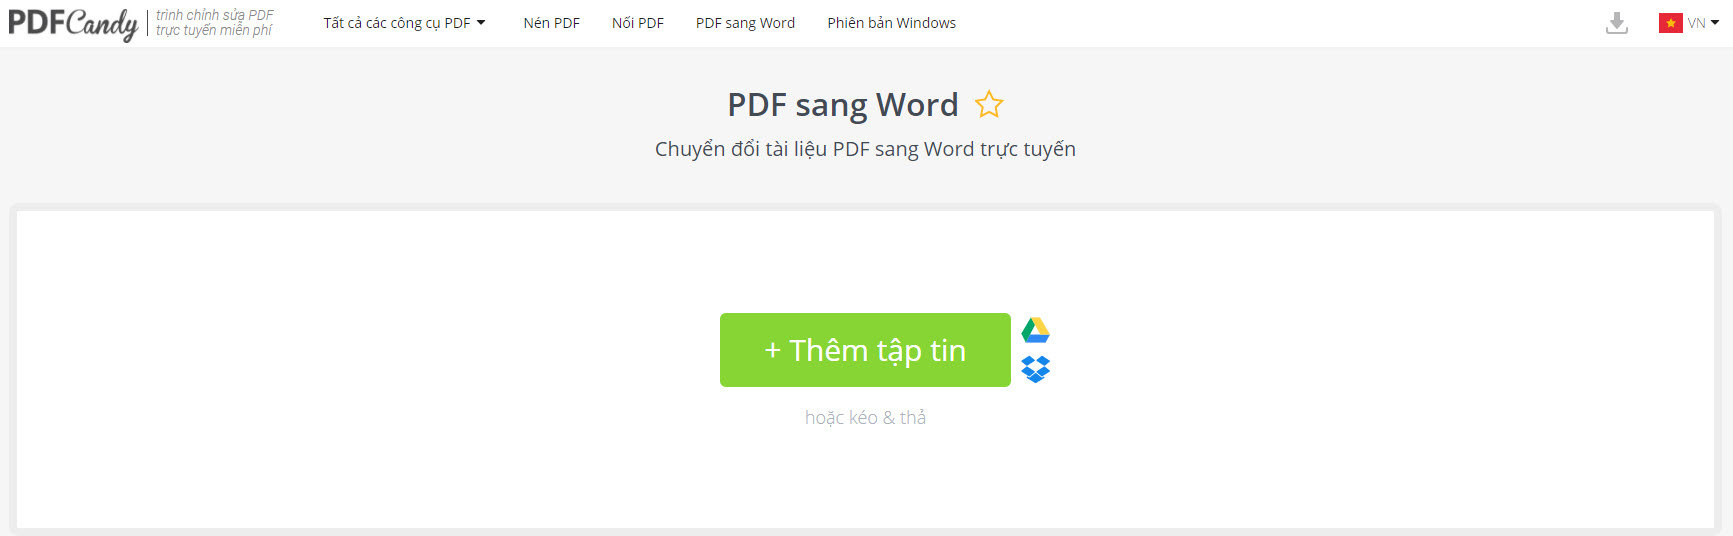 PDFCandy - Công cụ chuyển PDF sang Word Online, Offline cho PC - Ảnh 1